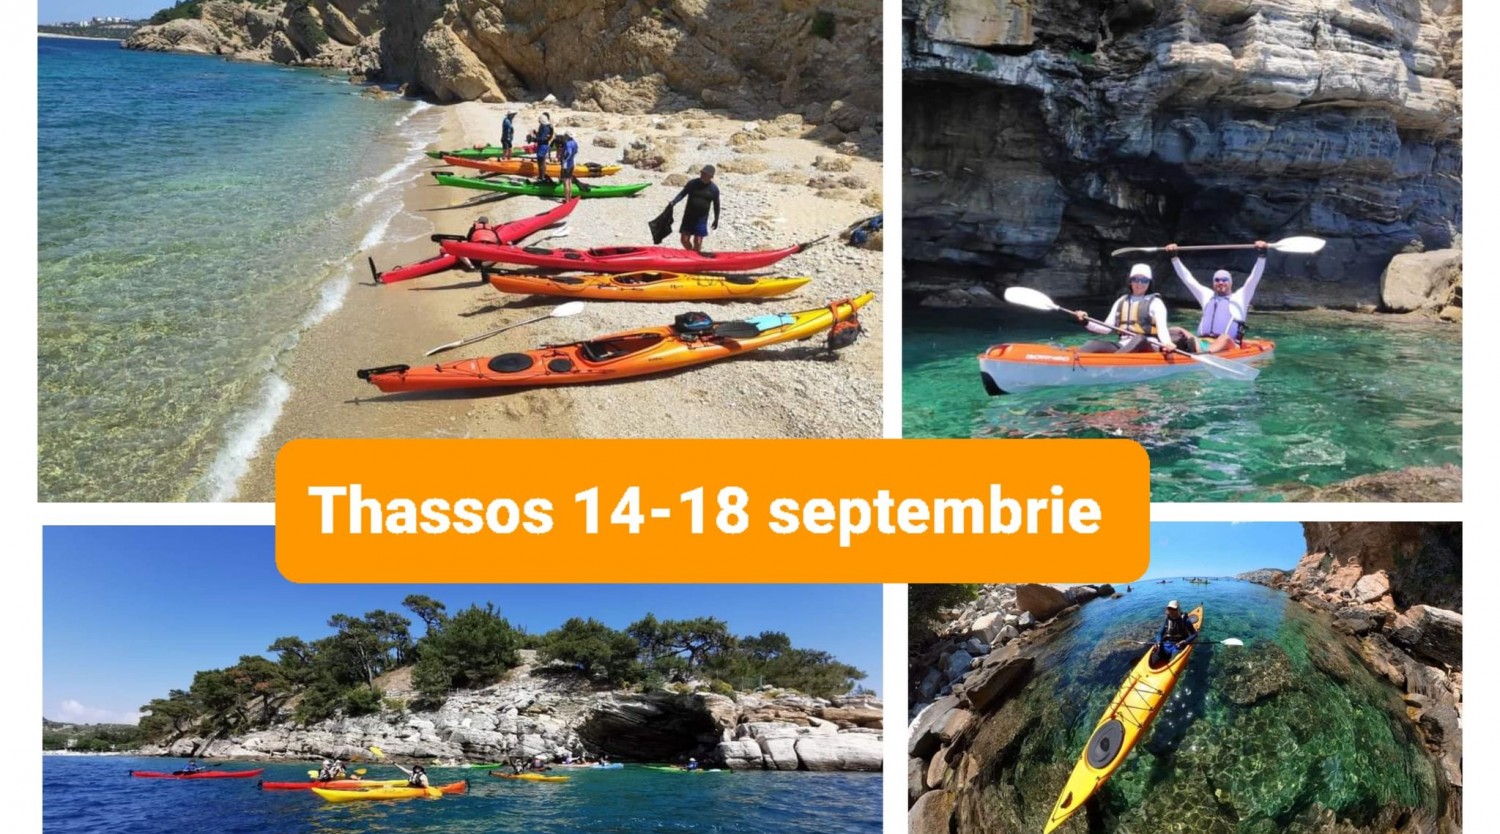 Aventura cu caiacul in THASSOS, Grecia 14-18 septembrie 2022